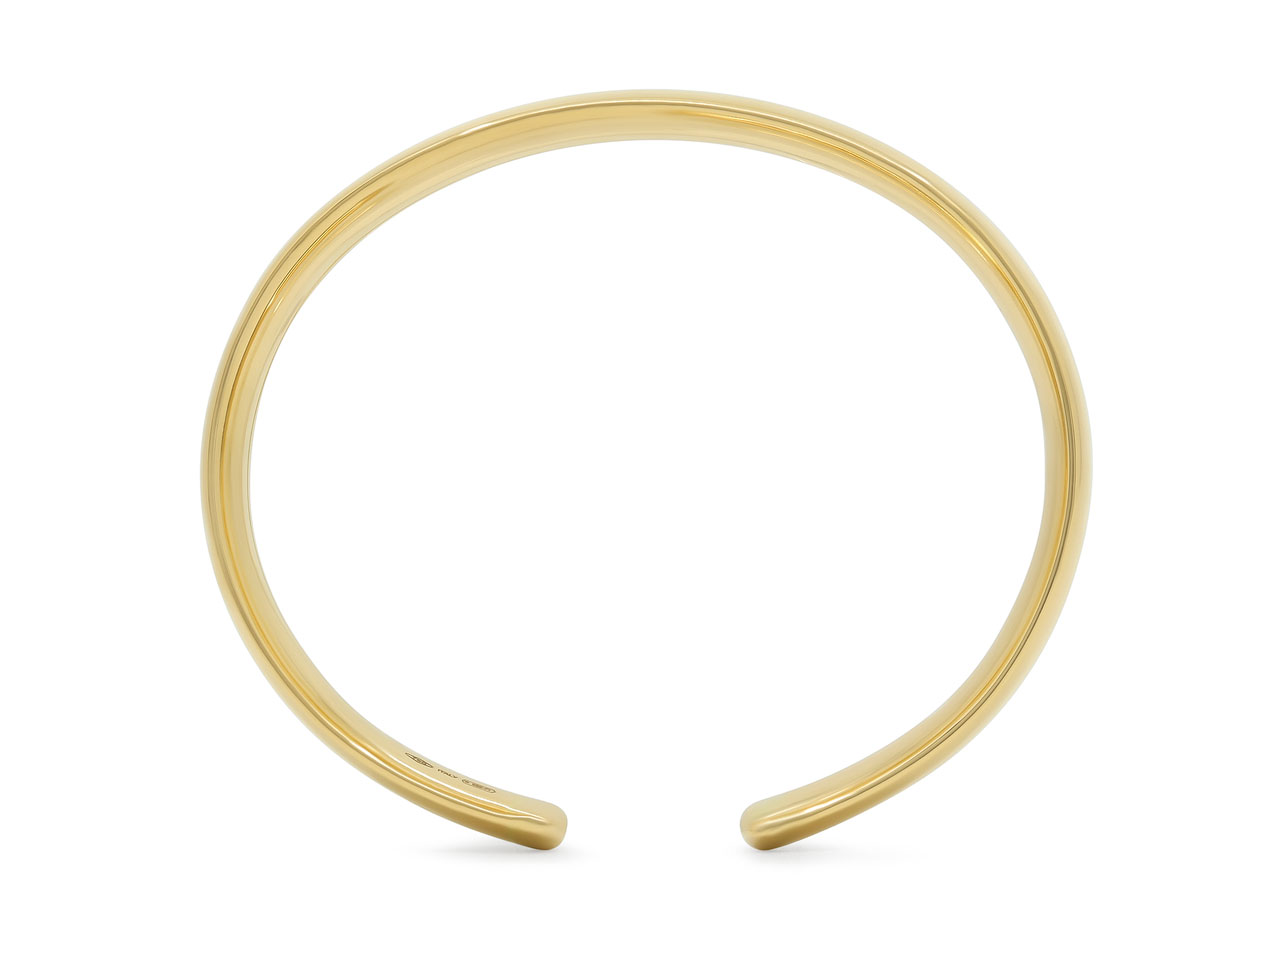 Italian Flexible Cuff Bracelet in 18K Gold, by Beladora